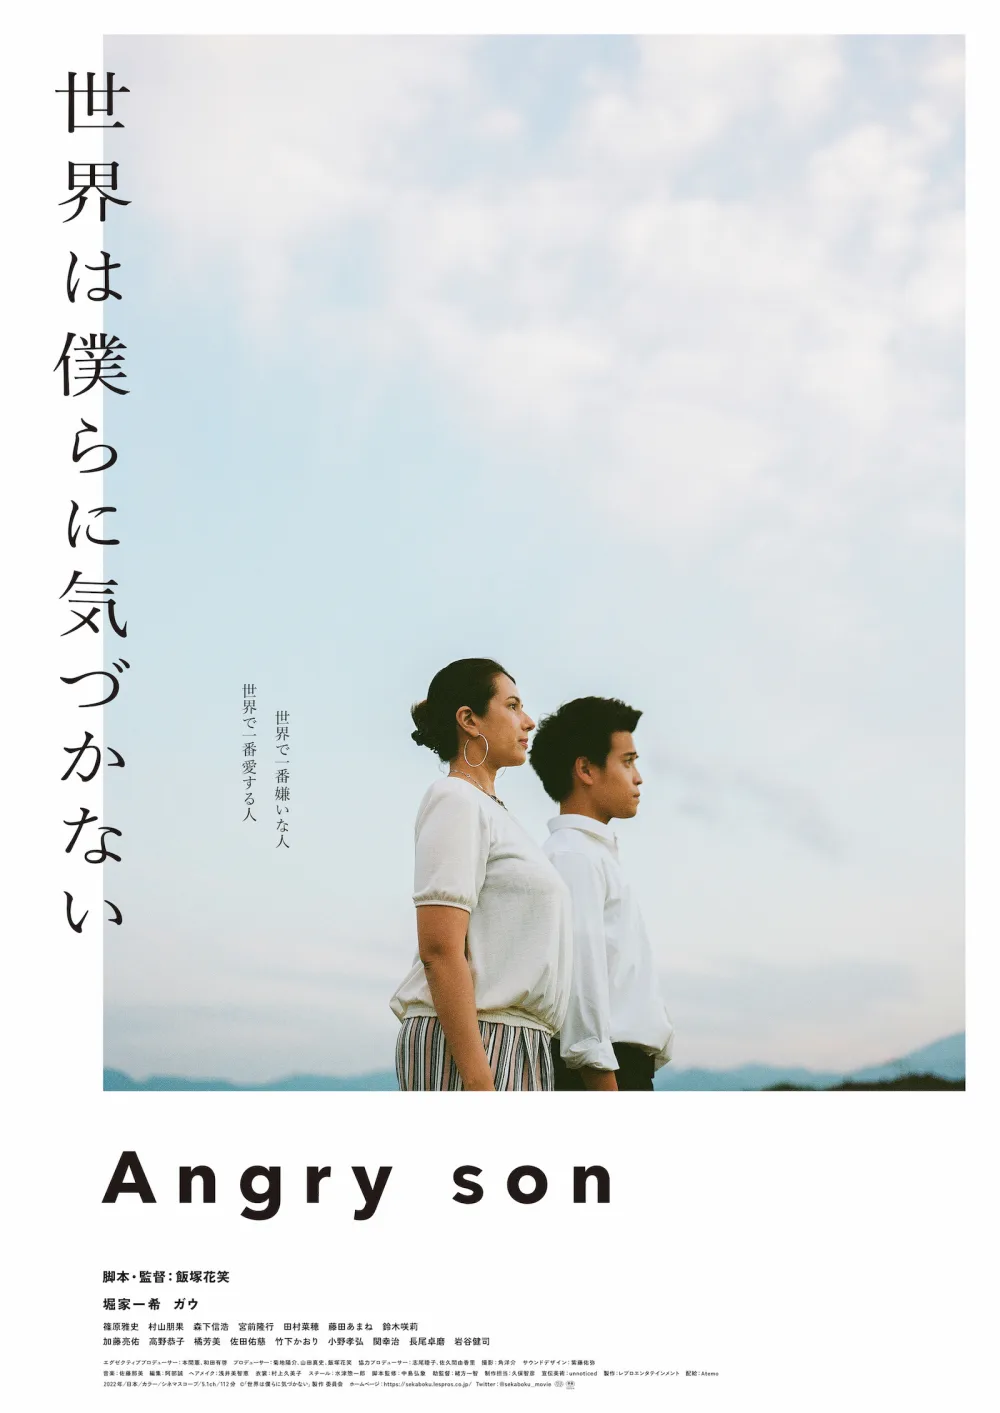 【画像】映画『世界は僕らに気づかない』(Angry Son) ポスタービジュアル